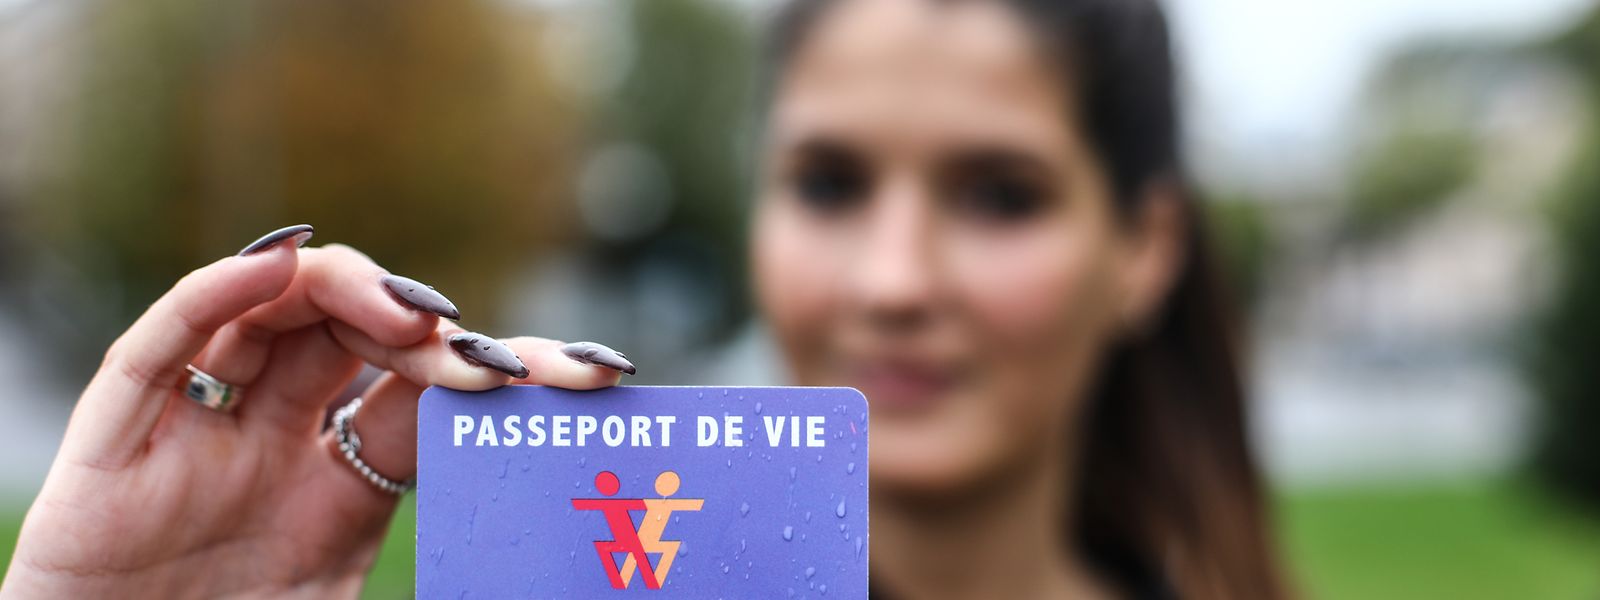 La carte de donneur d’organes «passeport de vie» est gratuite et elle peut être obtenue à plusieurs endroits.